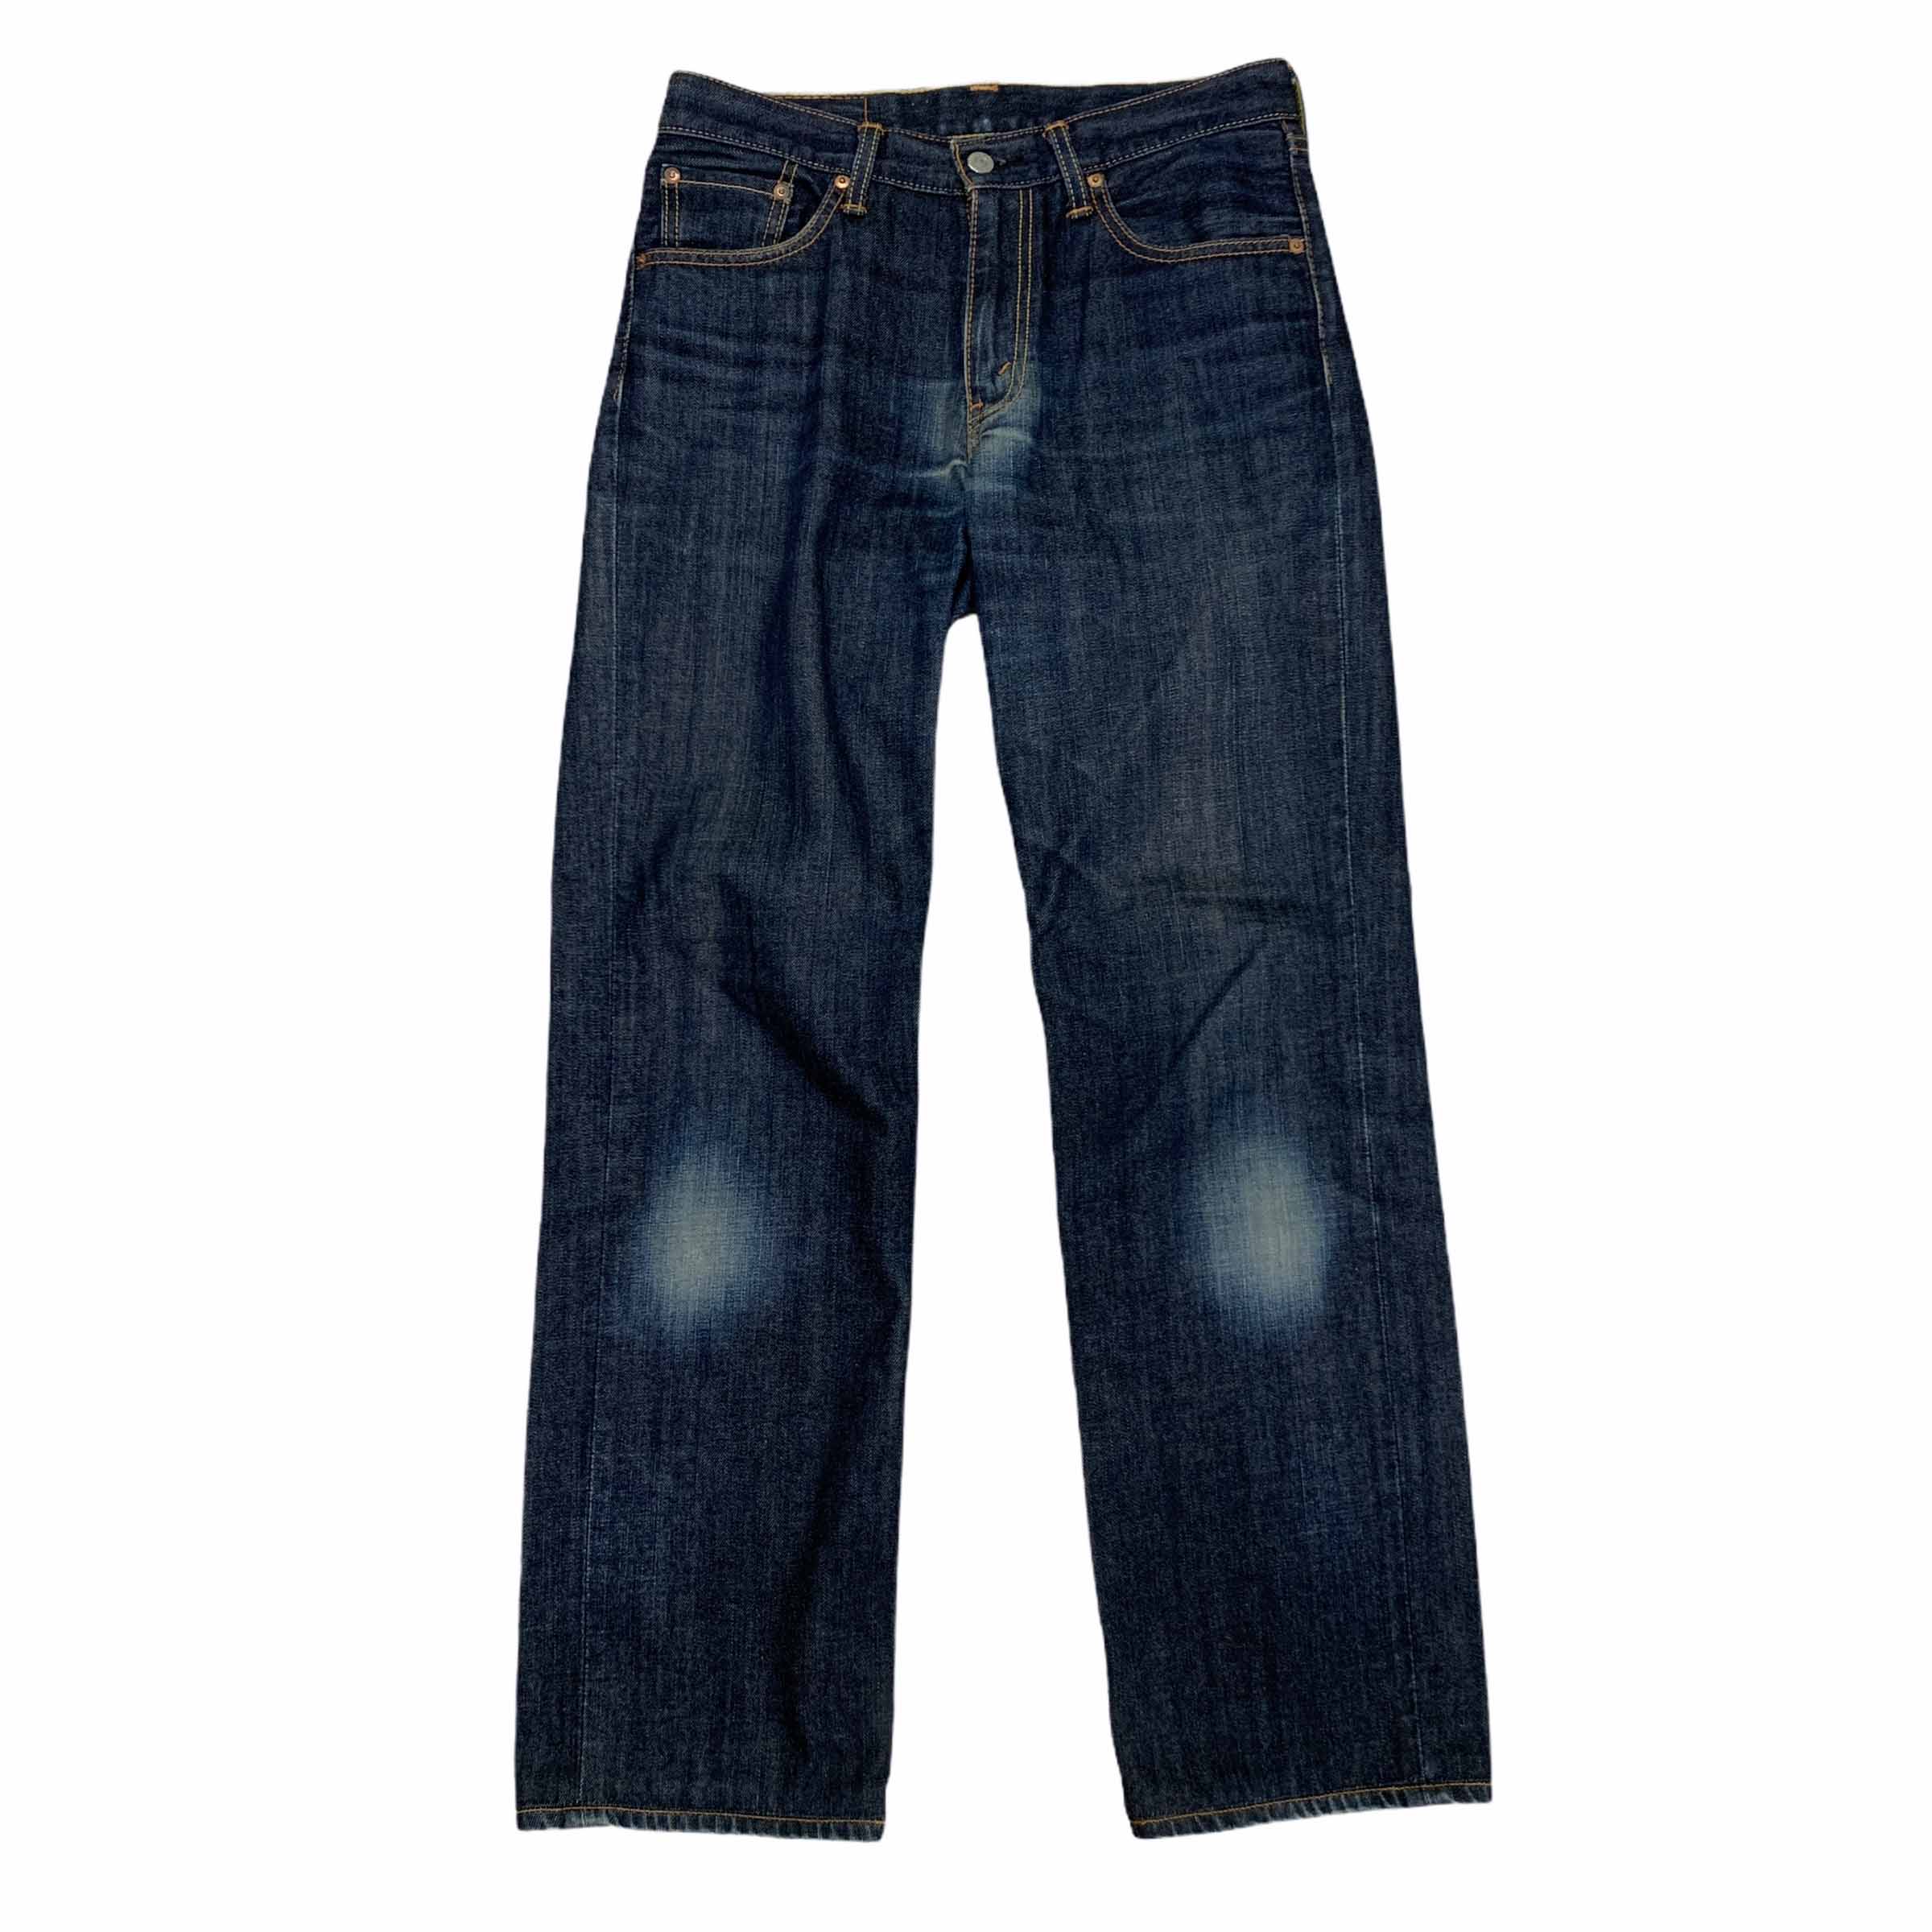 [Levis] (Vintage) 702 Denim pants - Size 30/33